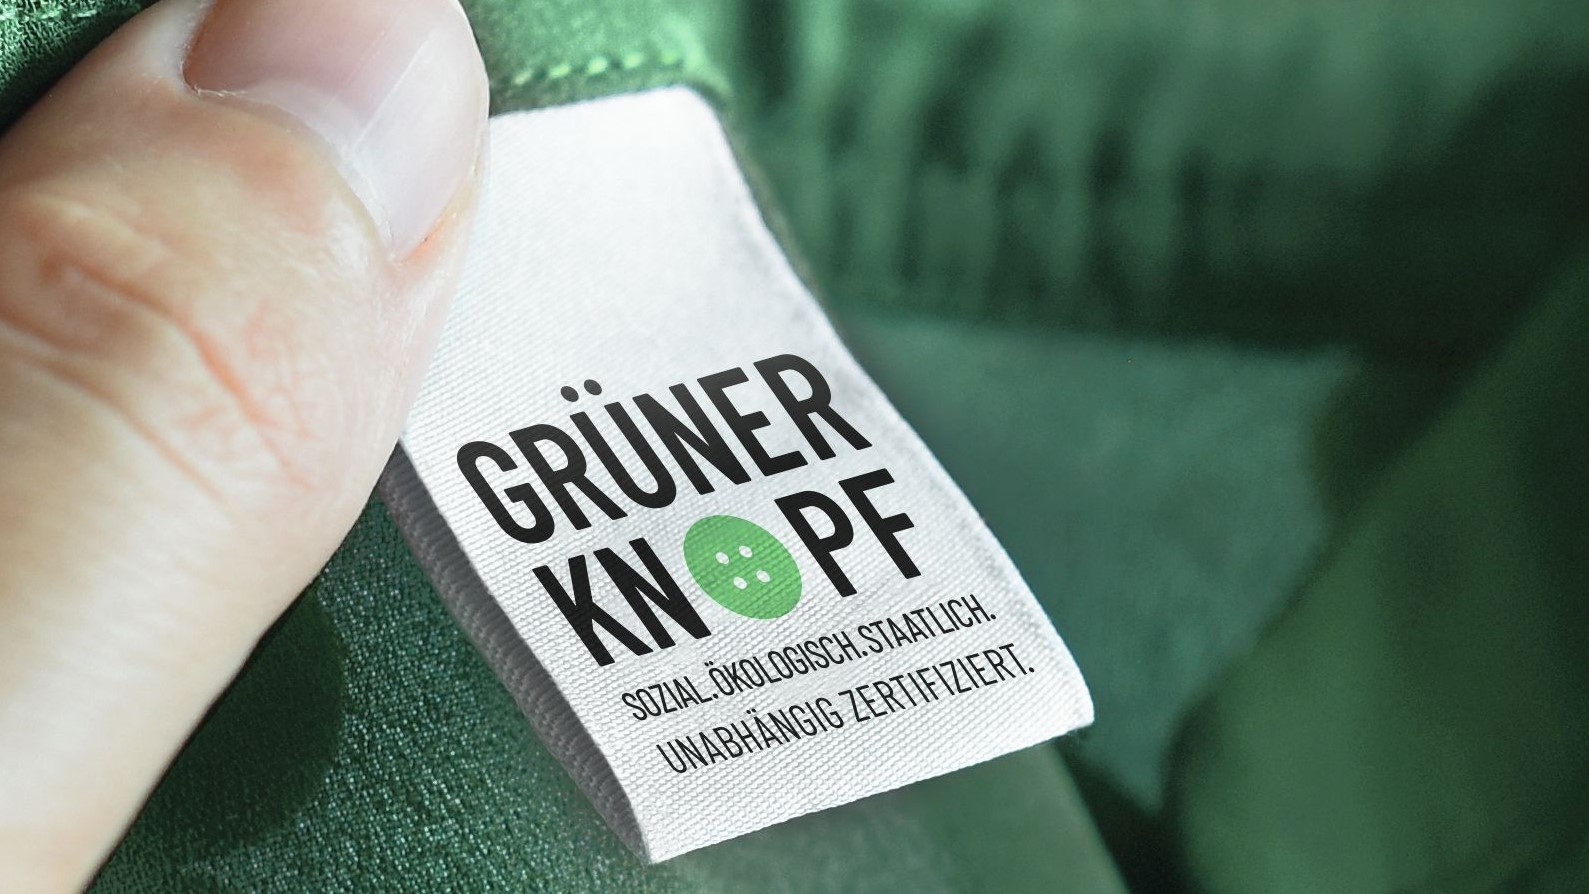 Seit drei Jahren lassen sich nachhaltige Textilien am staatlichen Siegel "Grner Knopf" erkennen - Quelle: Grner Knopf